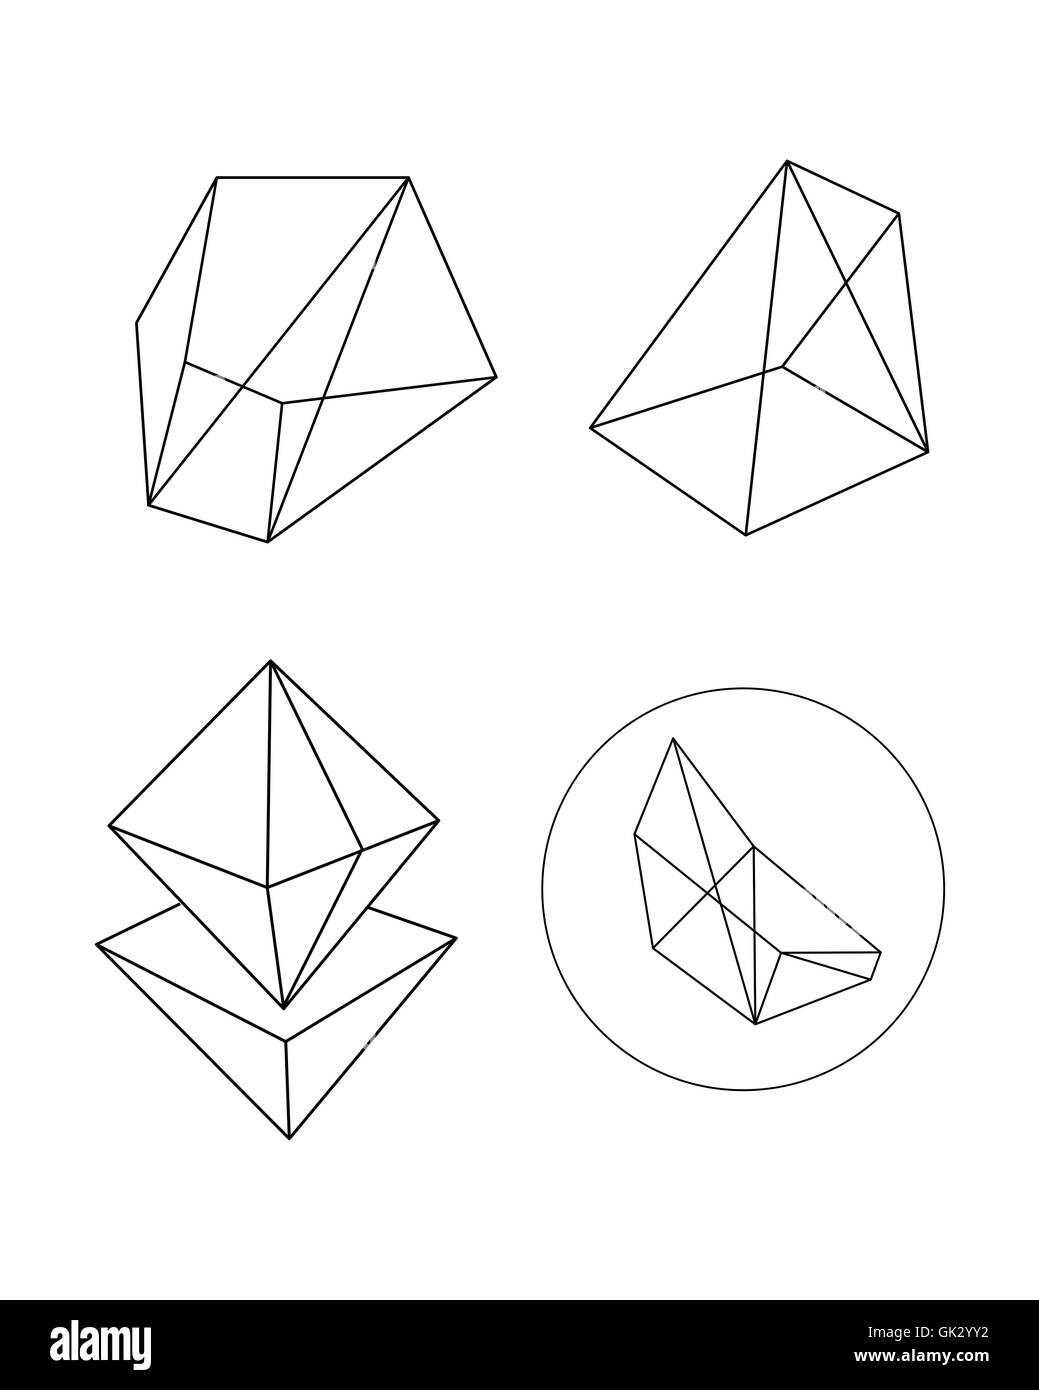 Vektor-Illustration oder eine Zeichnung der verschiedenen polygonalen geometrische abstrakte Formen Stockfoto